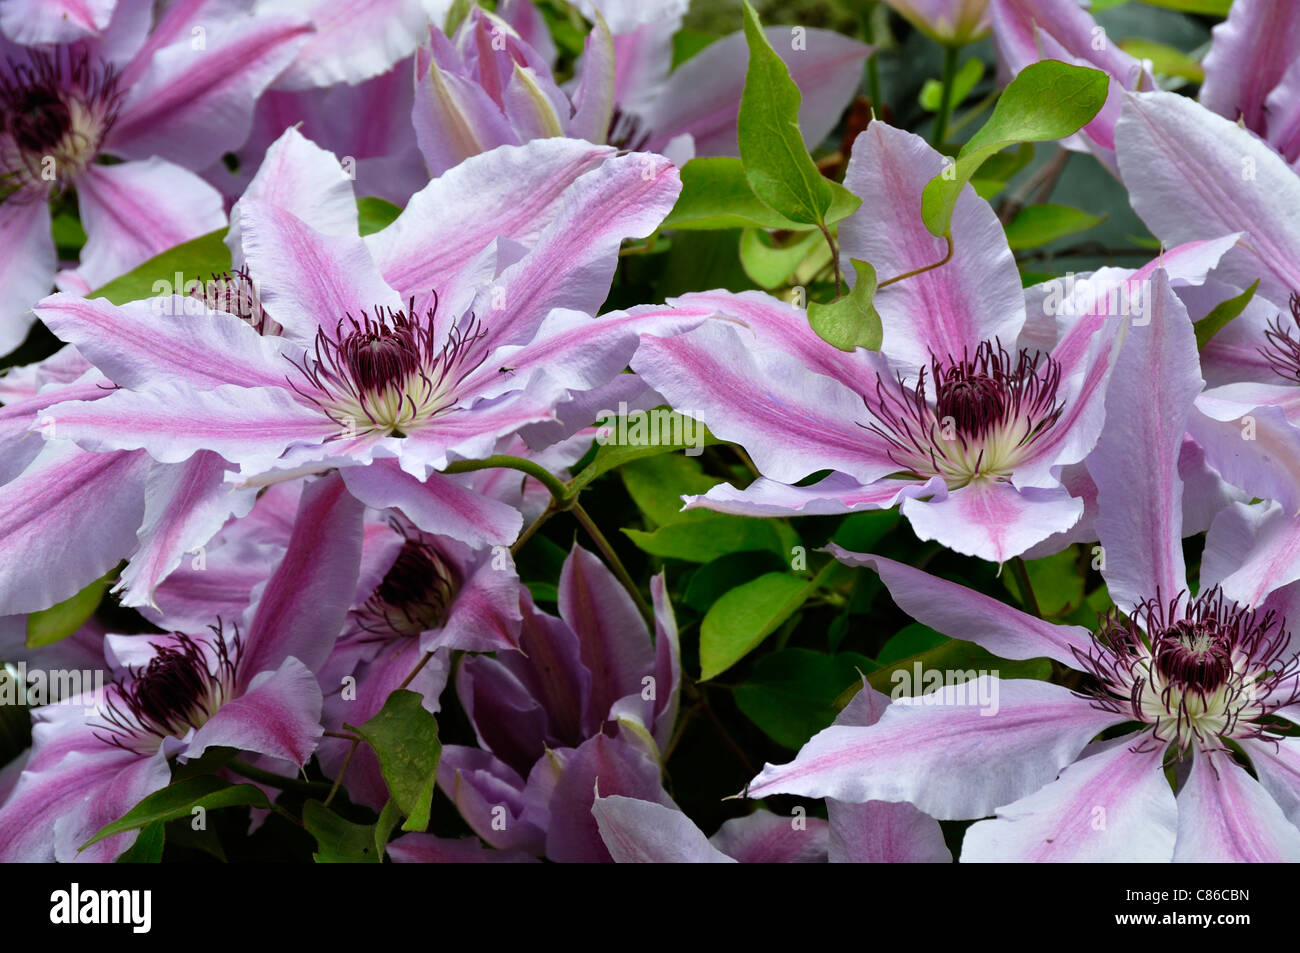 Clematis (Clematis sp) in bloom. Stock Photo